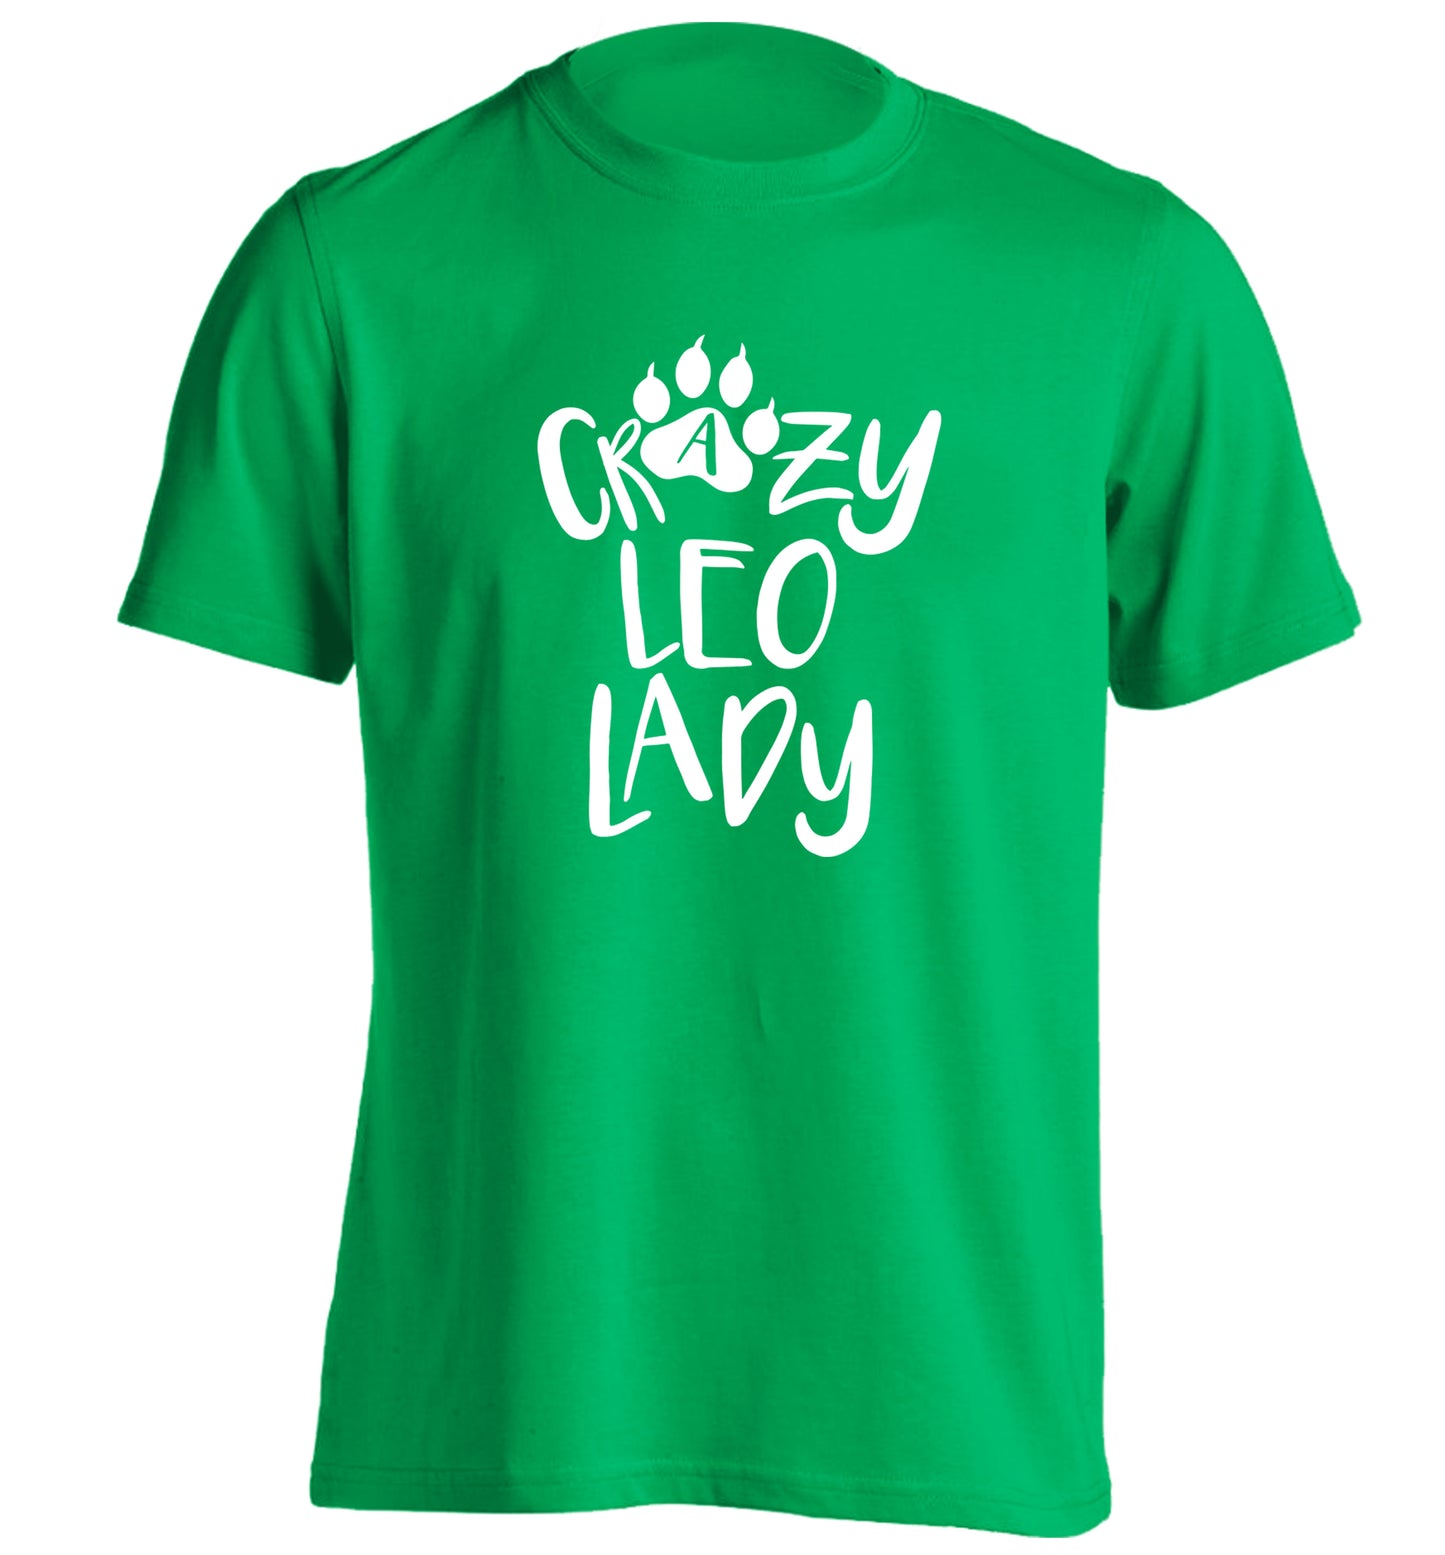 Crazy leo lady adults unisex green Tshirt 2XL